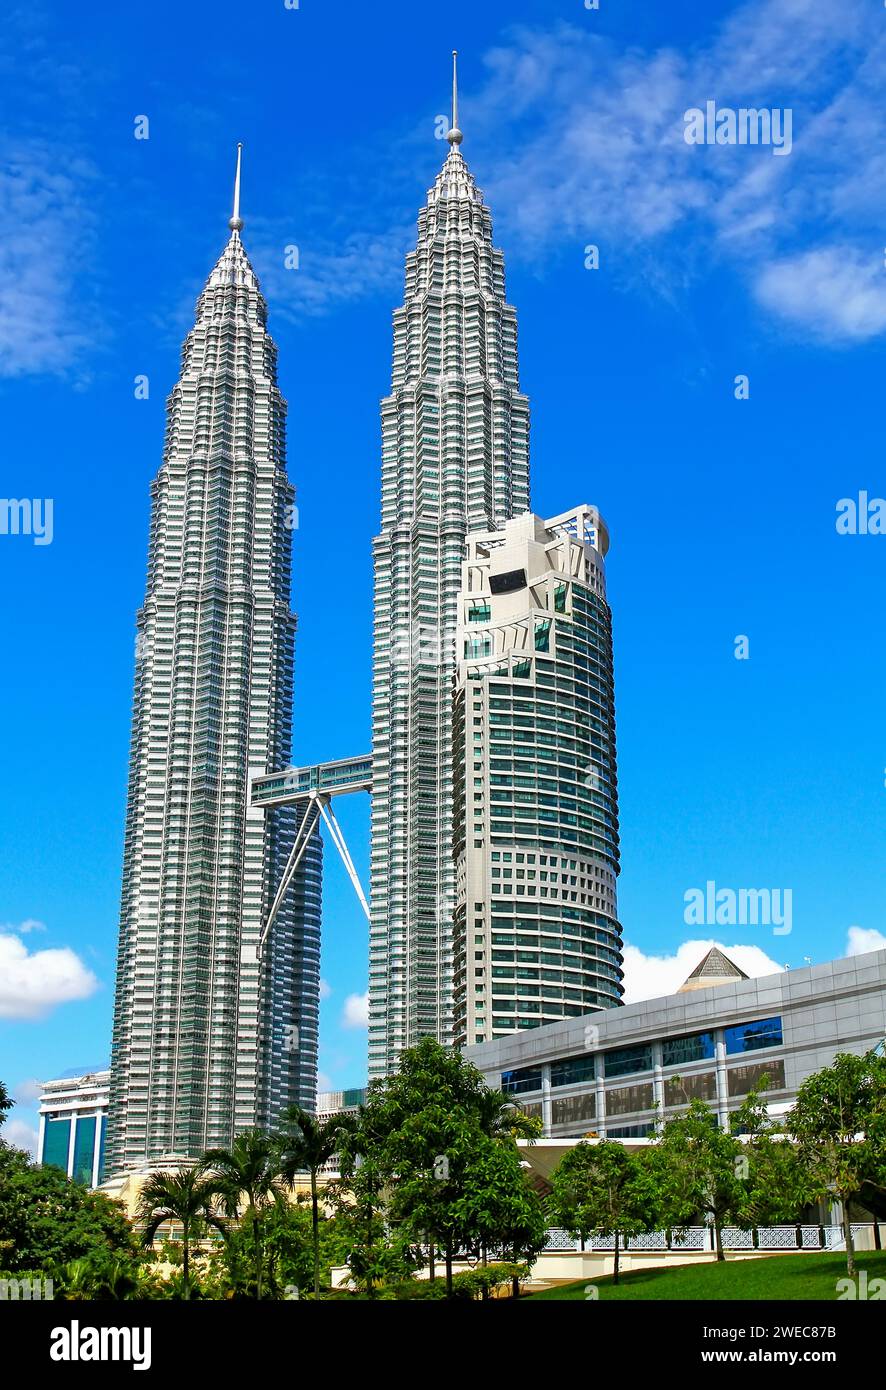 Tours jumelles Petronas ou KLCC vues depuis le parc KLCC à Kuala Lumpur, Malaisie. Banque D'Images